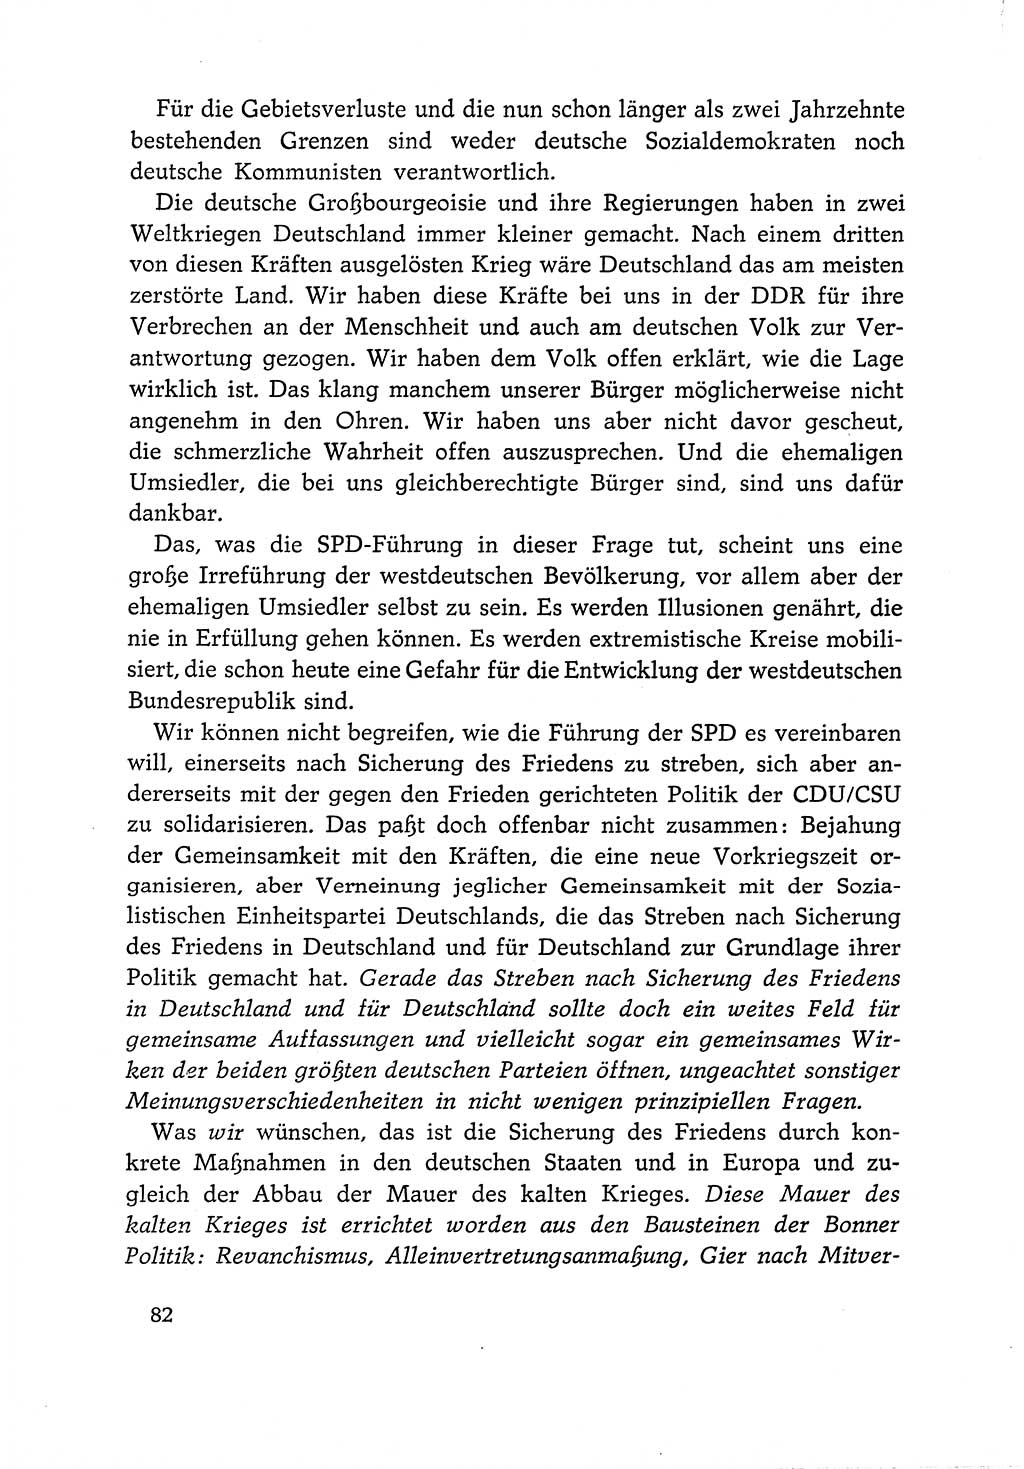 Dokumente der Sozialistischen Einheitspartei Deutschlands (SED) [Deutsche Demokratische Republik (DDR)] 1966-1967, Seite 82 (Dok. SED DDR 1966-1967, S. 82)